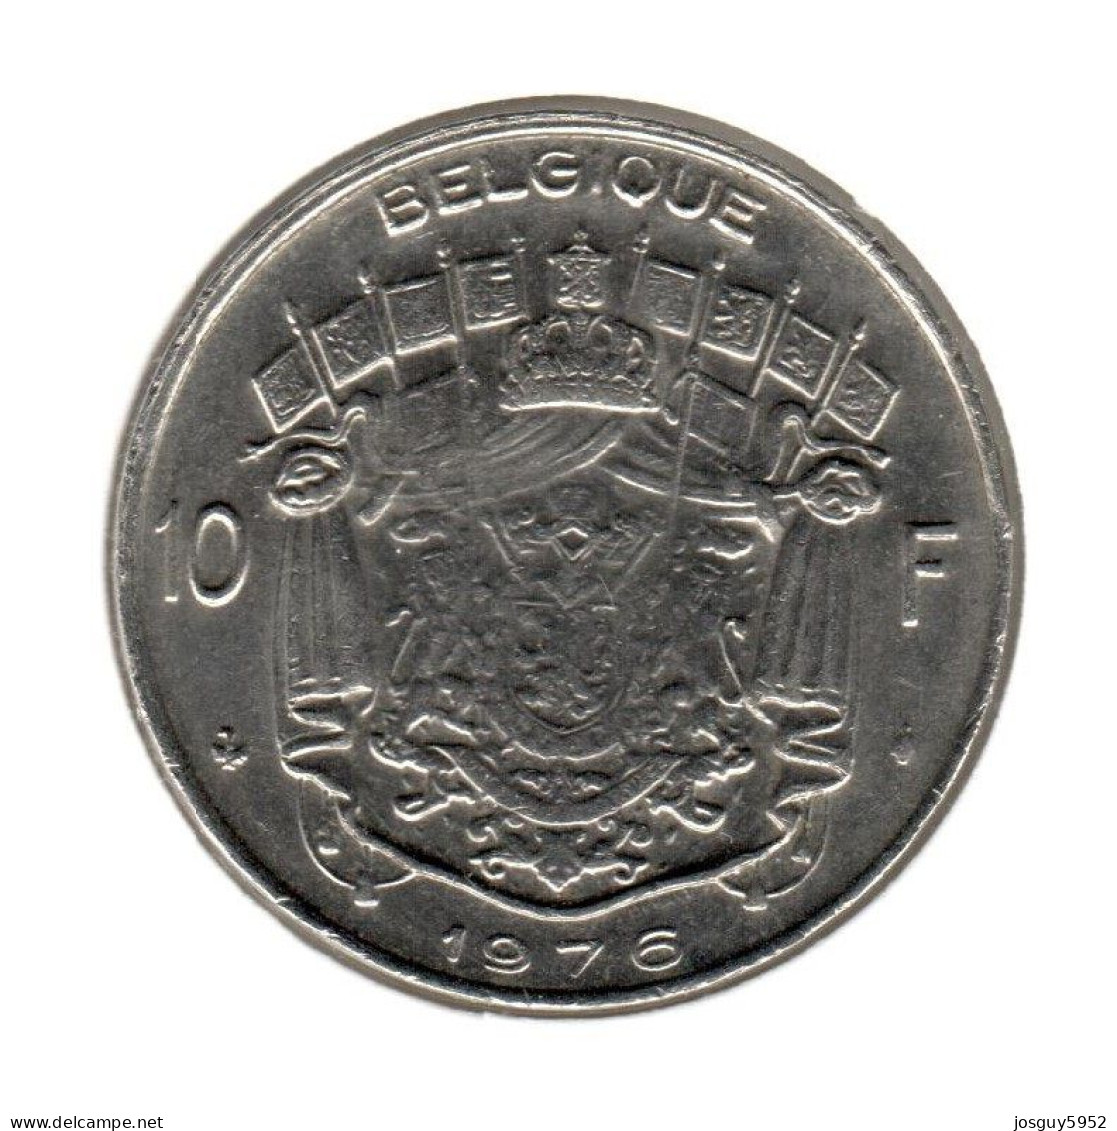 BELGIE - 10 FRANK 1976 - FRANS - PR - 10 Francs